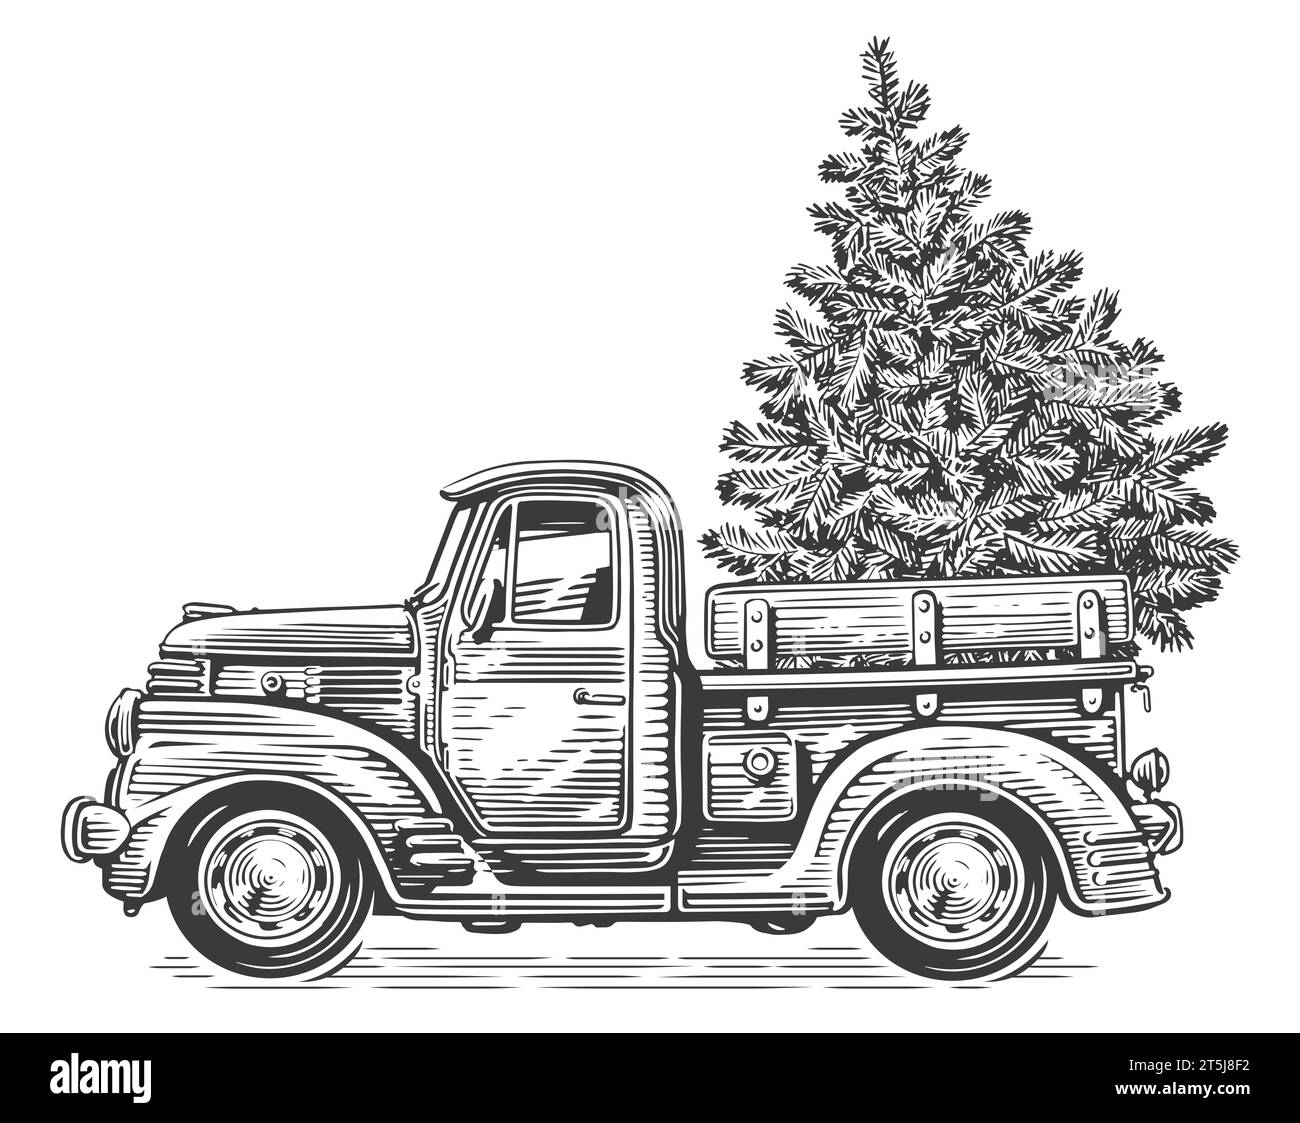 Camión retro de la Navidad con el árbol de pino. Dibujado a mano dibujo vintage ilustración estilo de grabado Foto de stock